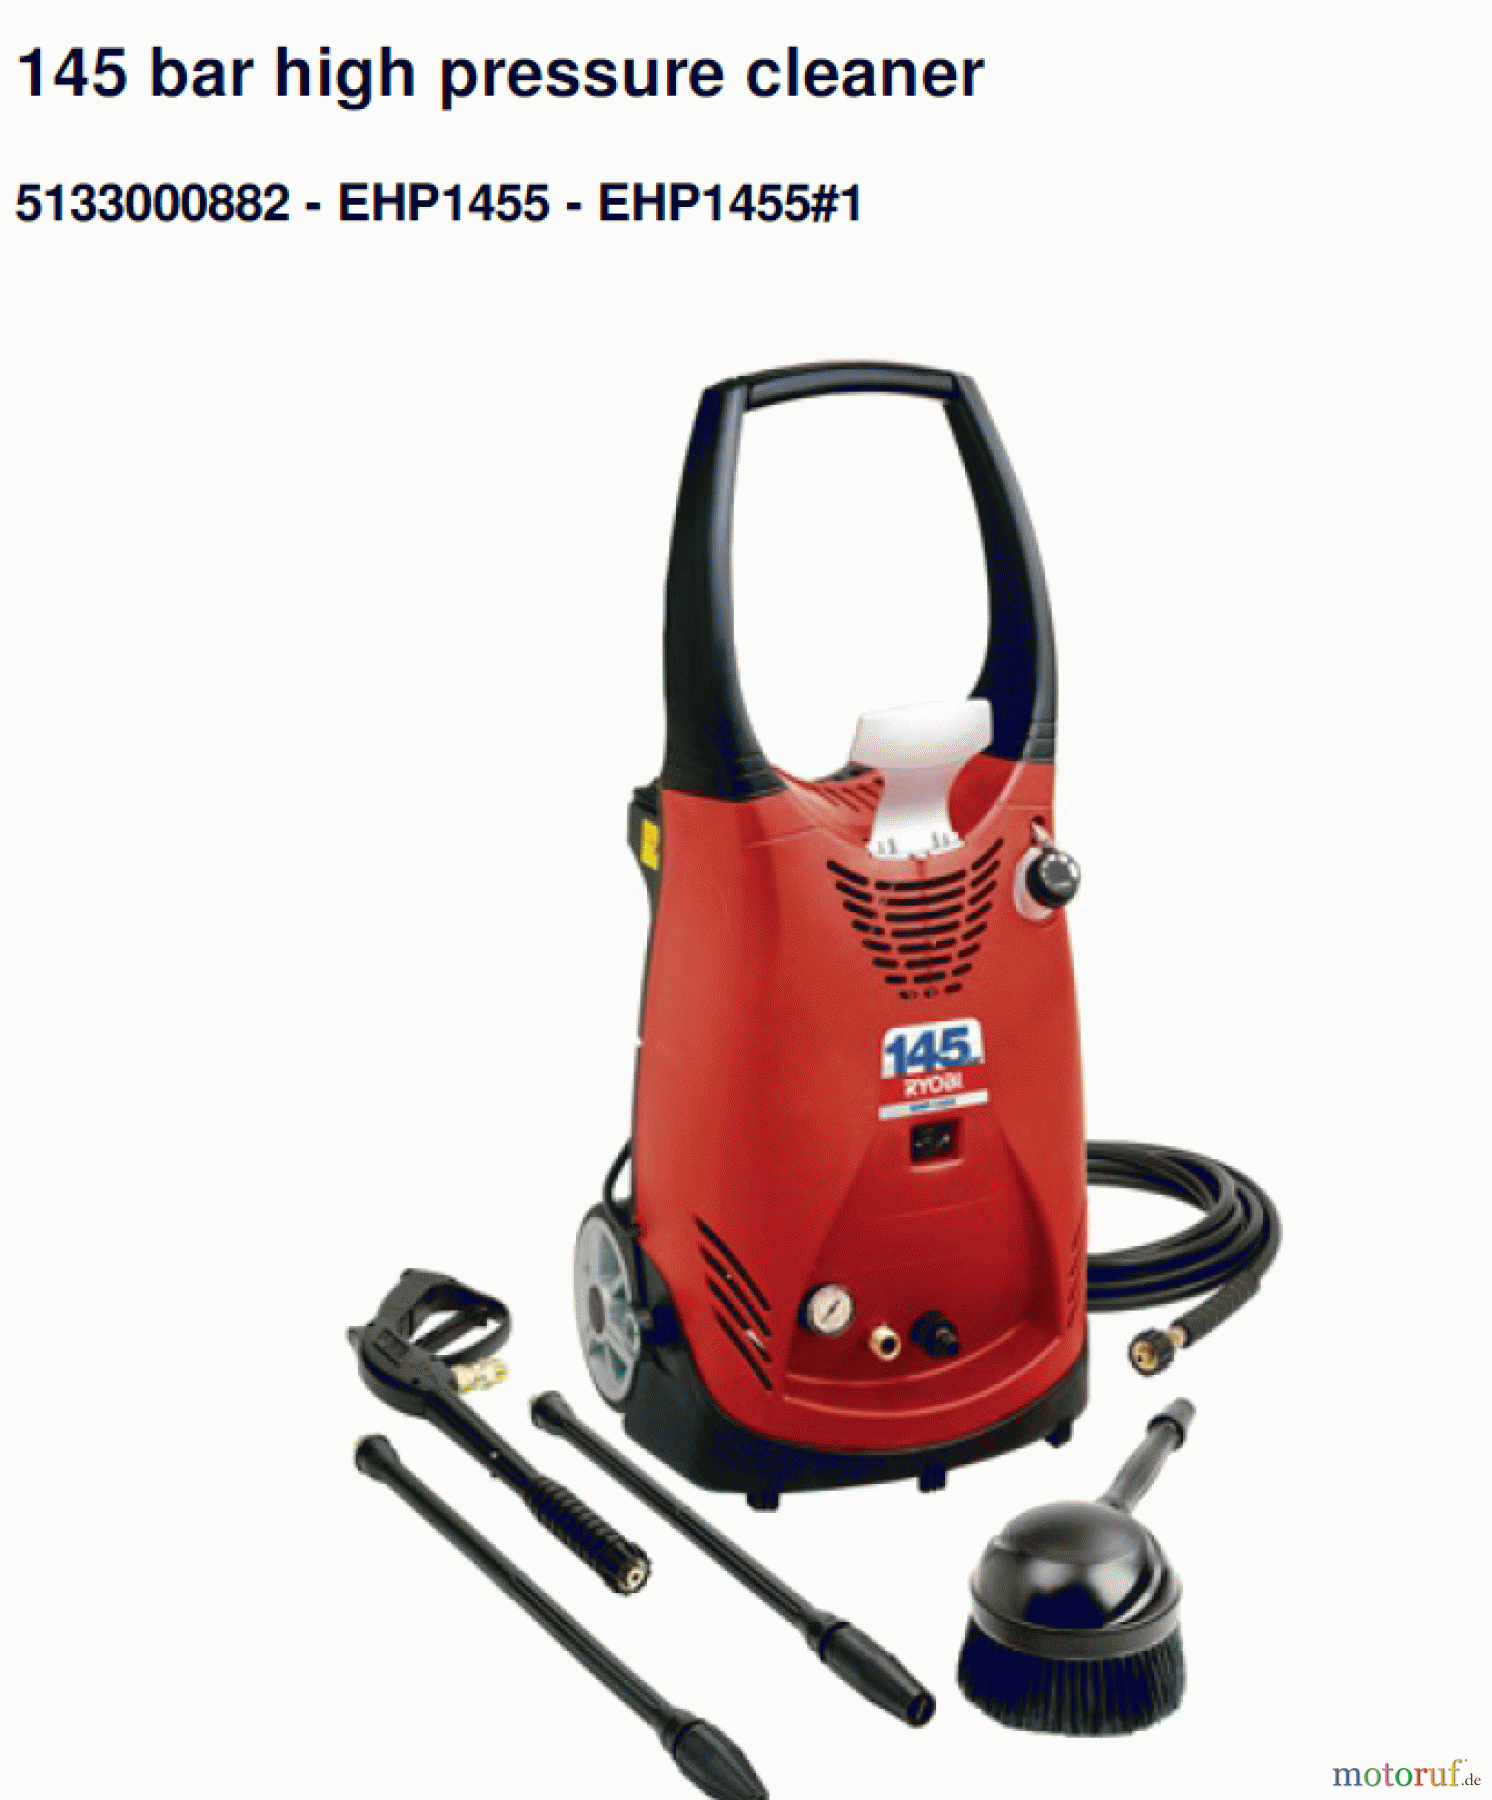  Ryobi Hochdruckreiniger EHP1455